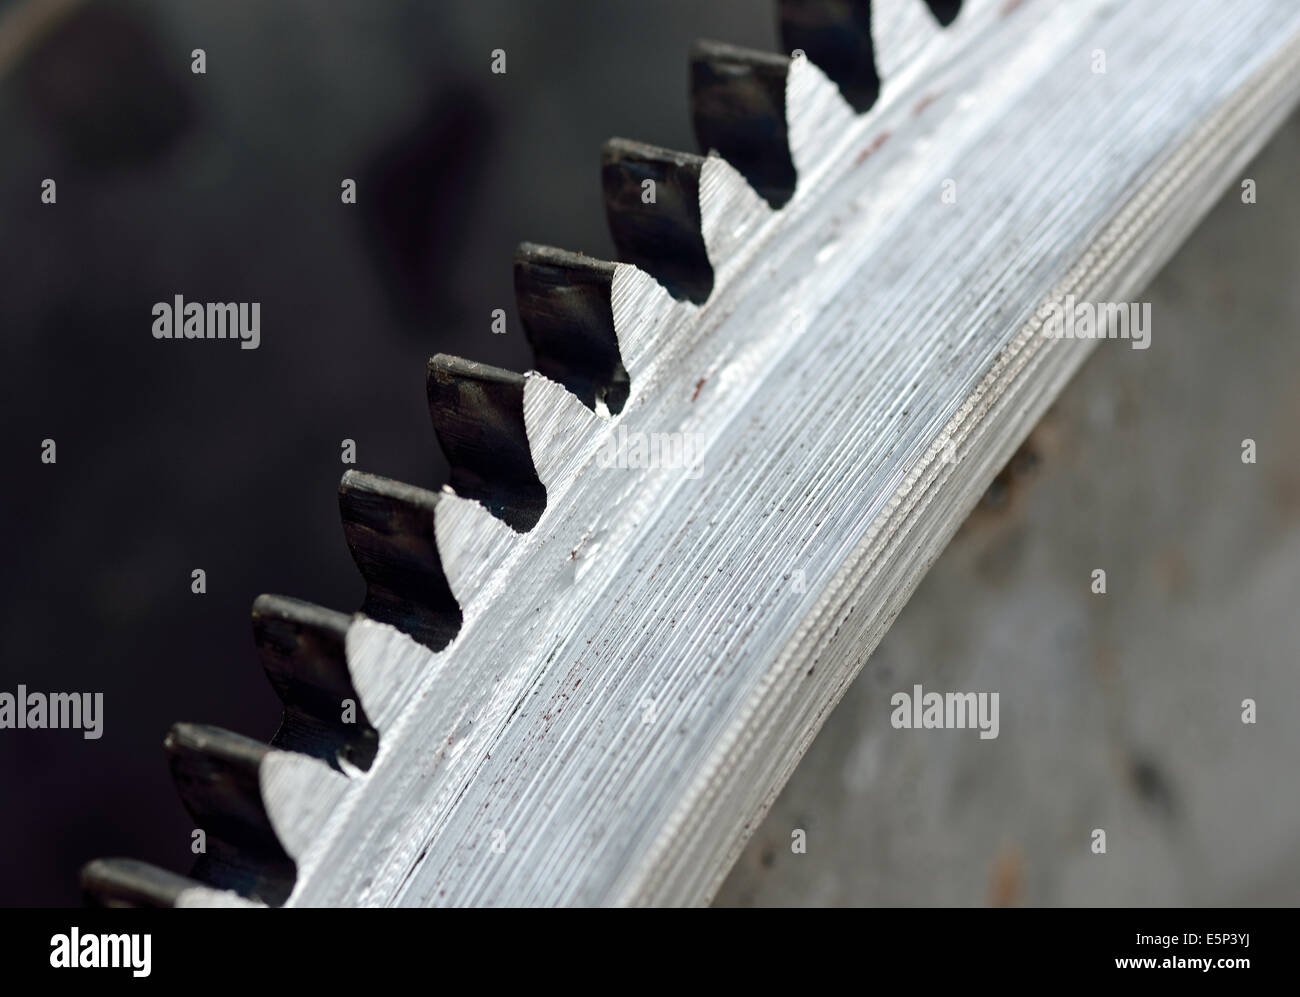 Hecha de metal gears para uso en trabajos industriales pesados Foto de stock